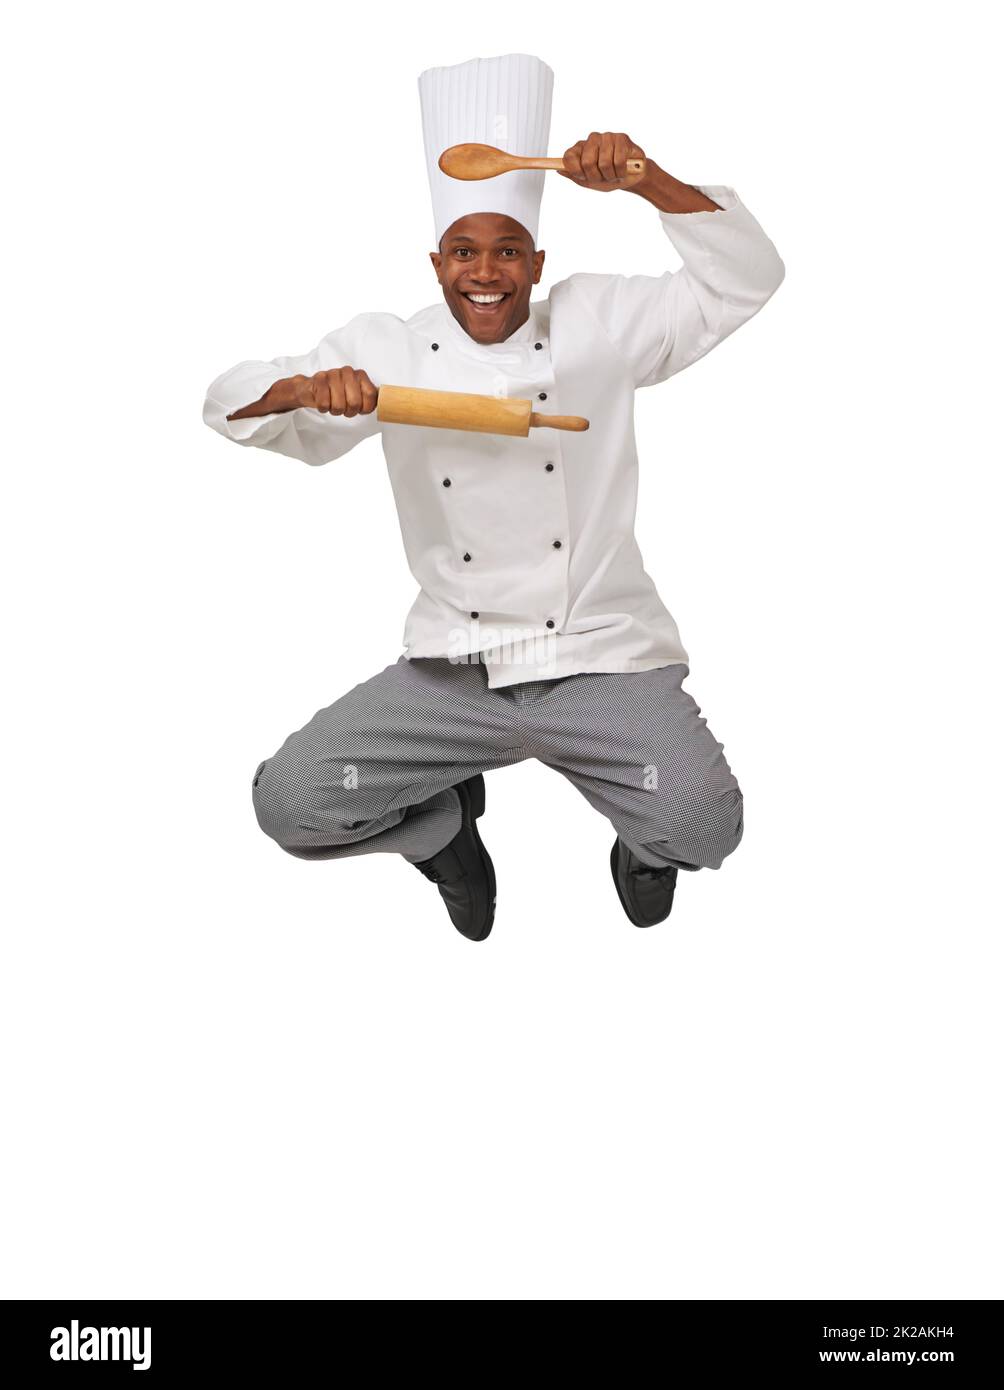 Köche Begeistern. EIN afroamerikanischer Koch springt in die Luft und hält eine Rolle und einen Löffel. Stockfoto